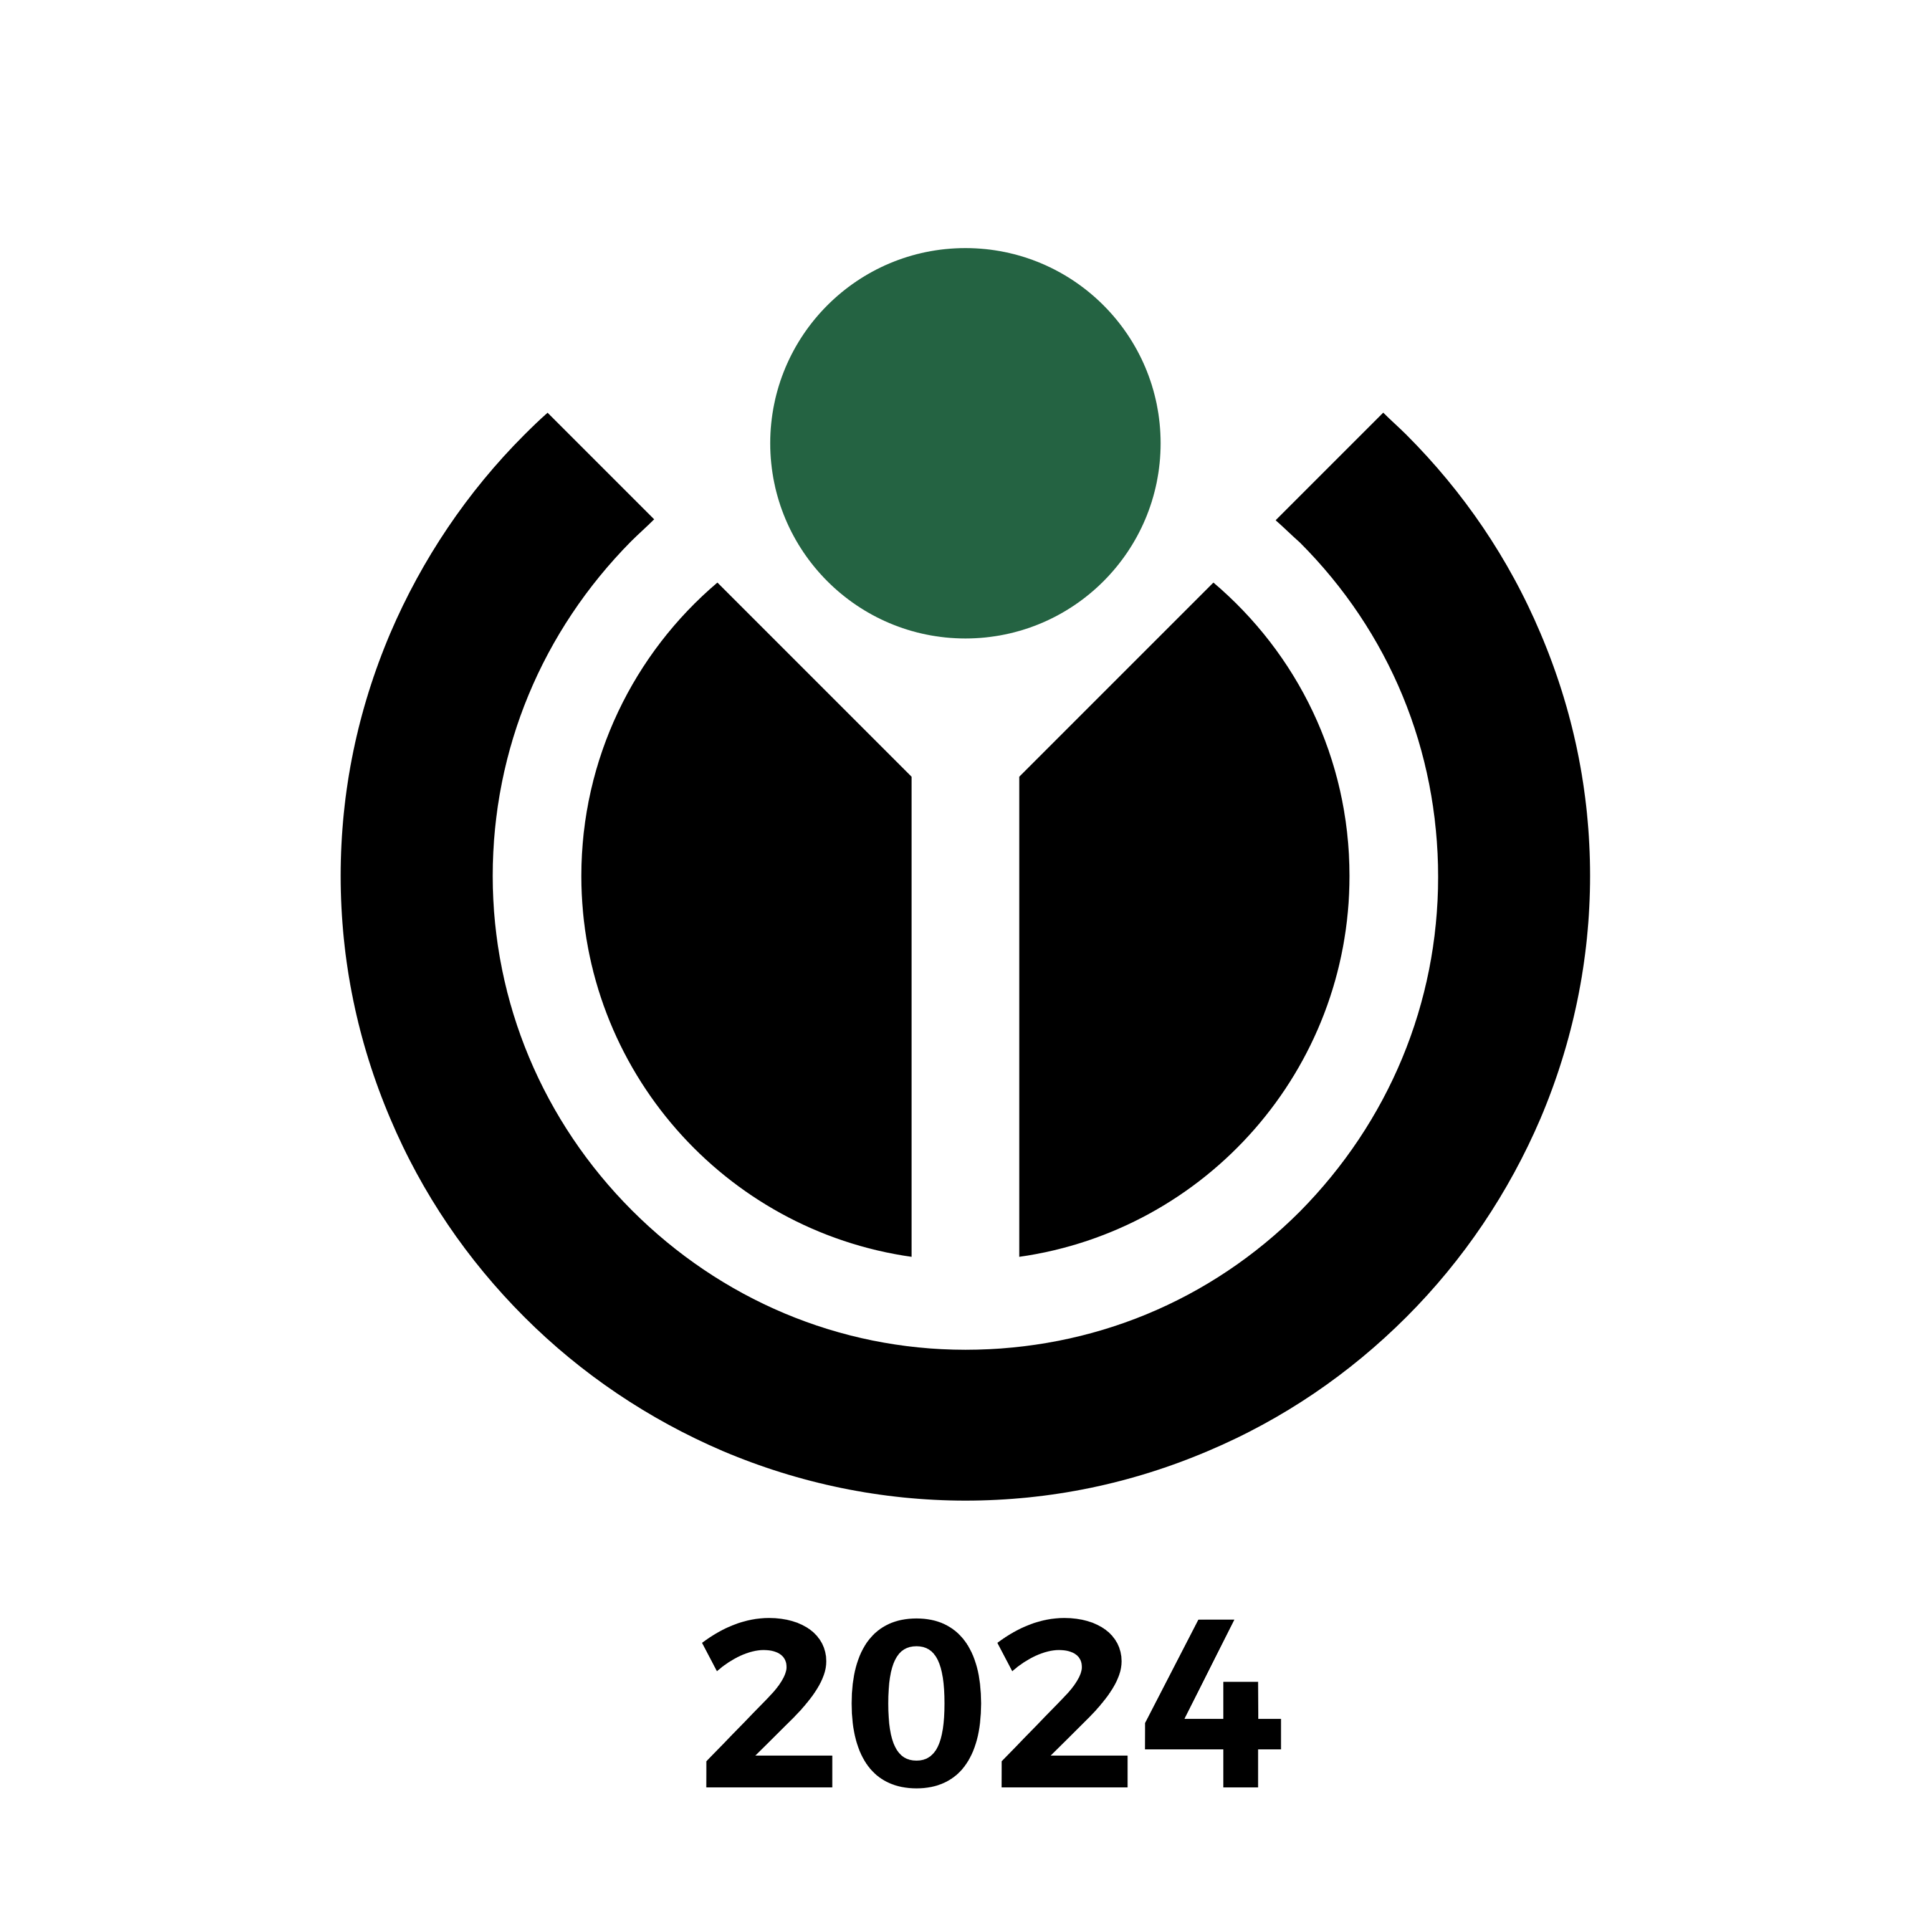 Wikimedia Hackathon logo with '2024' text below